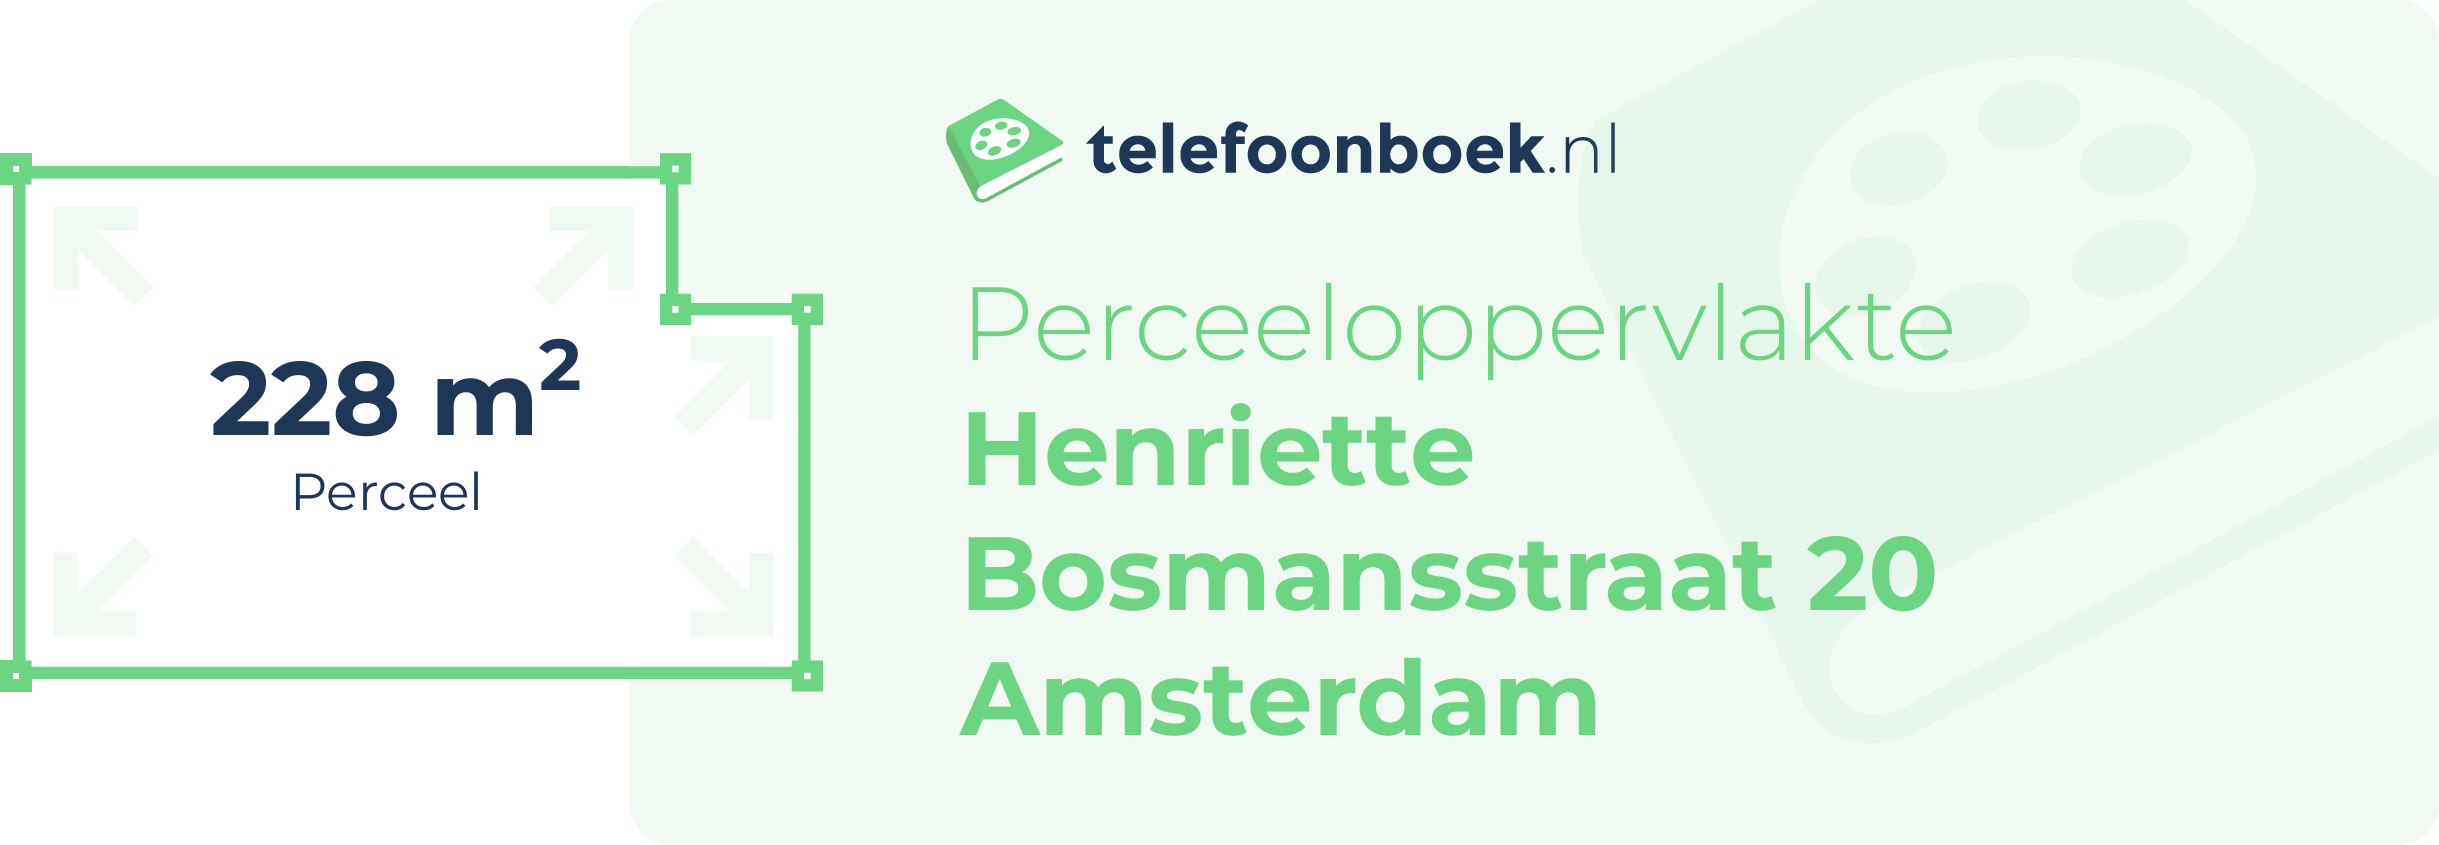 Perceeloppervlakte Henriette Bosmansstraat 20 Amsterdam